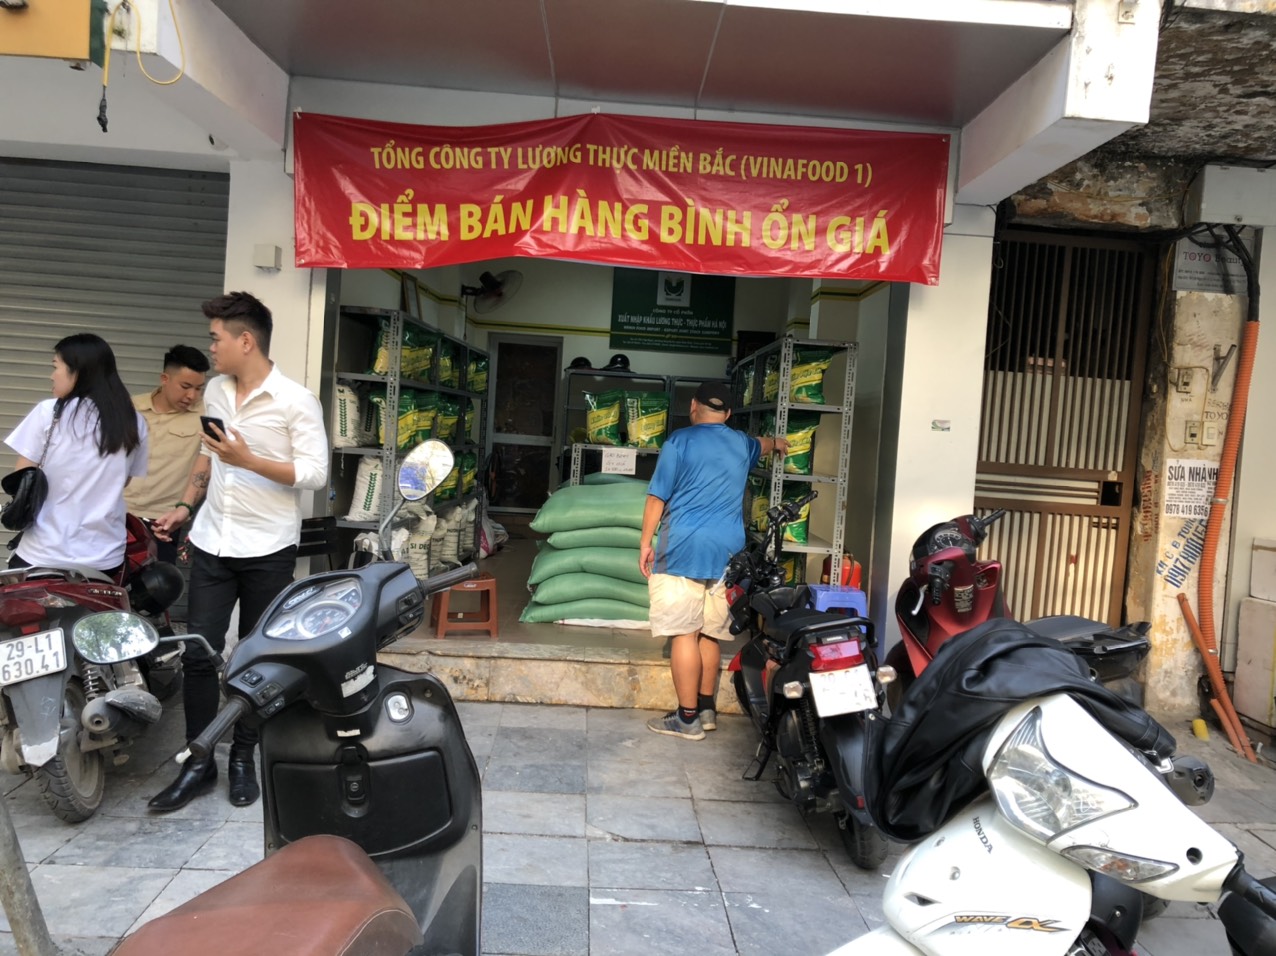 Một cửa hàng bán gạo bình ổn giá của Vinafood1 tại 36 Nguyễn Hữu Huân, Hoàn kiếm Hà Nội. 